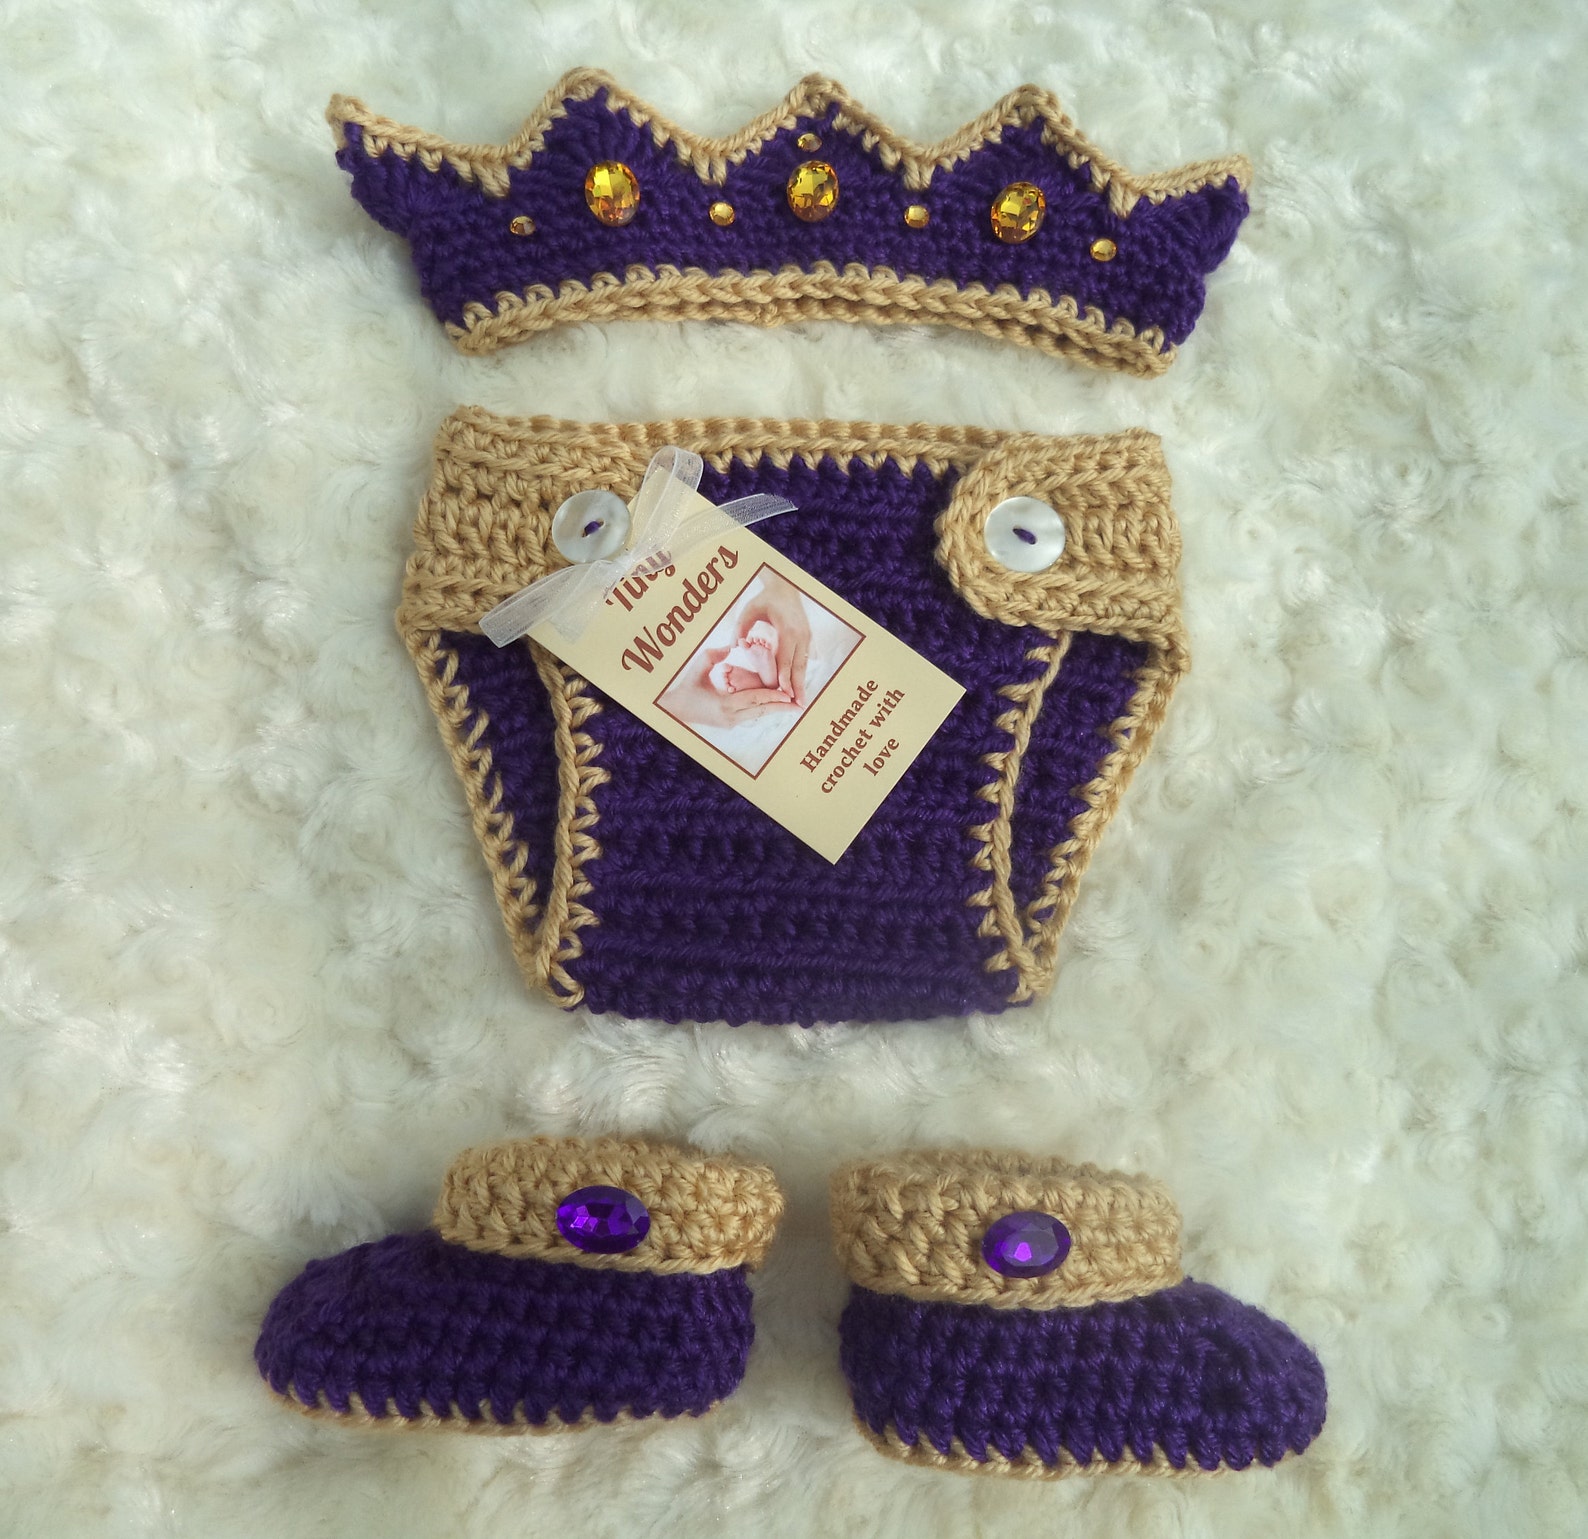 Crochet Baby King Crown Crochet Diaper Cover Set Crochet - Etsy